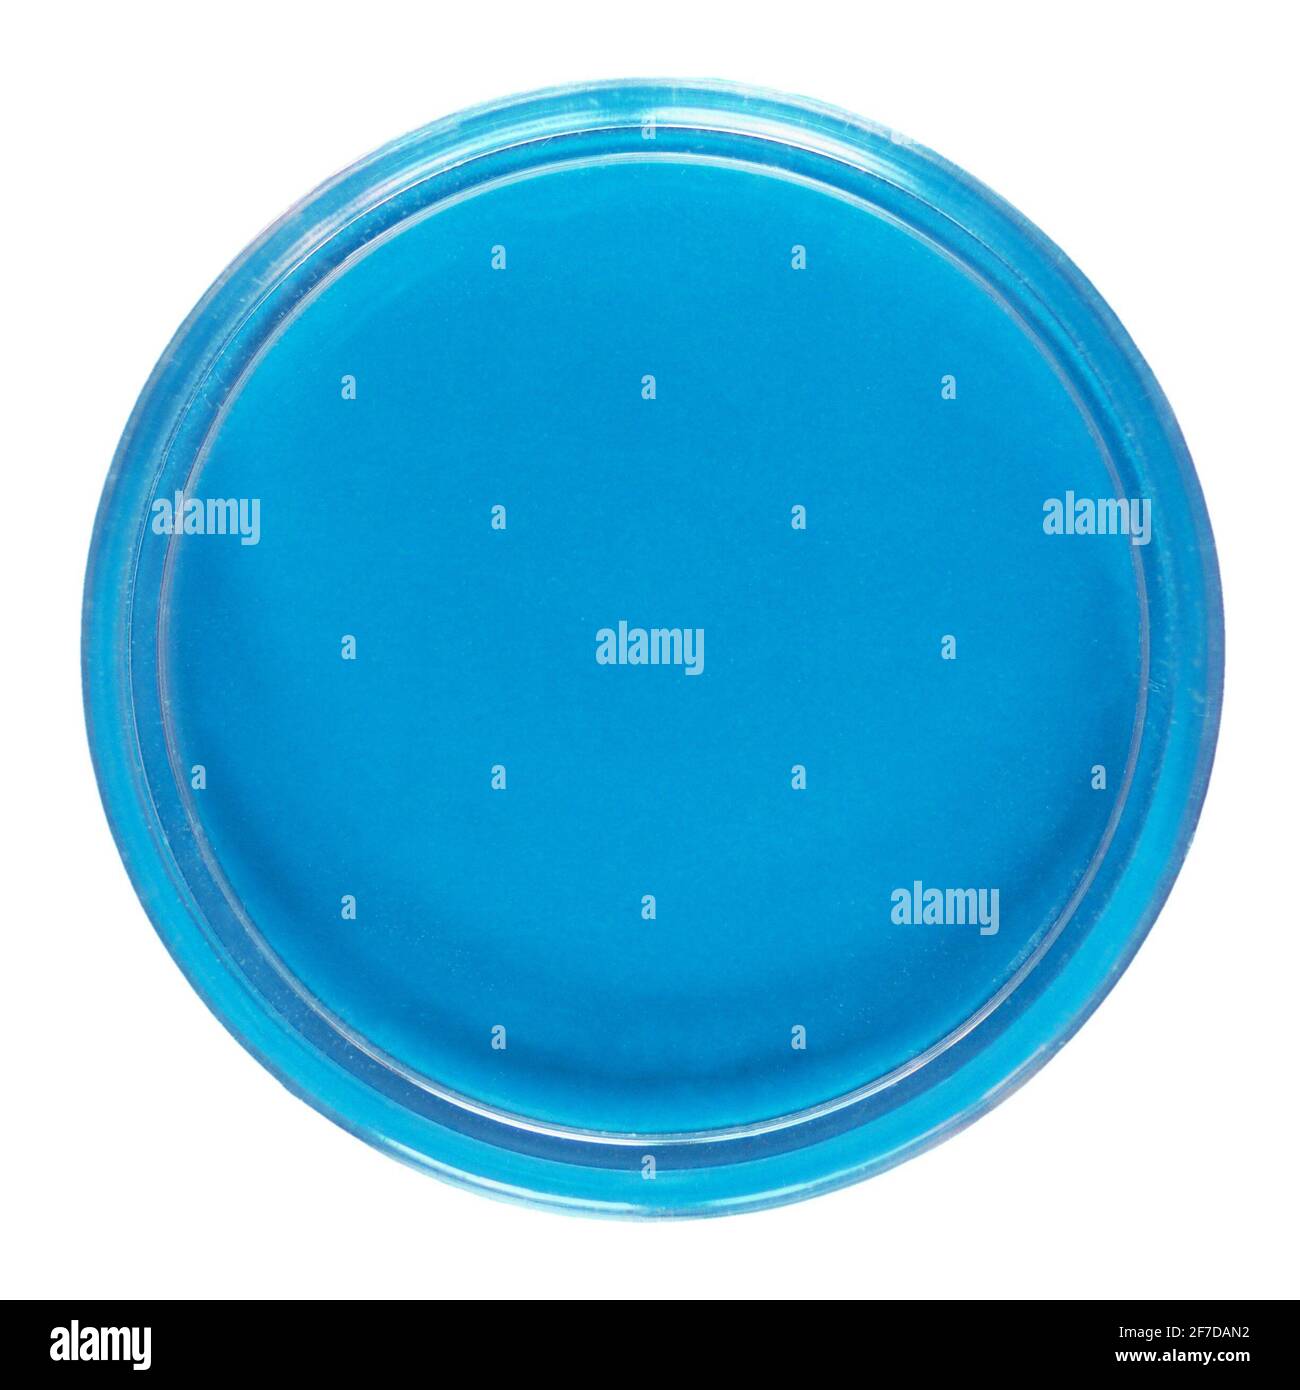 Eine Petrischale (auch Petrie-Schale, Petrischale oder Zellkulturschale  genannt), zylindrische Glas- oder Kunststoffschale, die zur Kultur von  Zellen wie Bakterien oder Mo verwendet wird Stockfotografie - Alamy